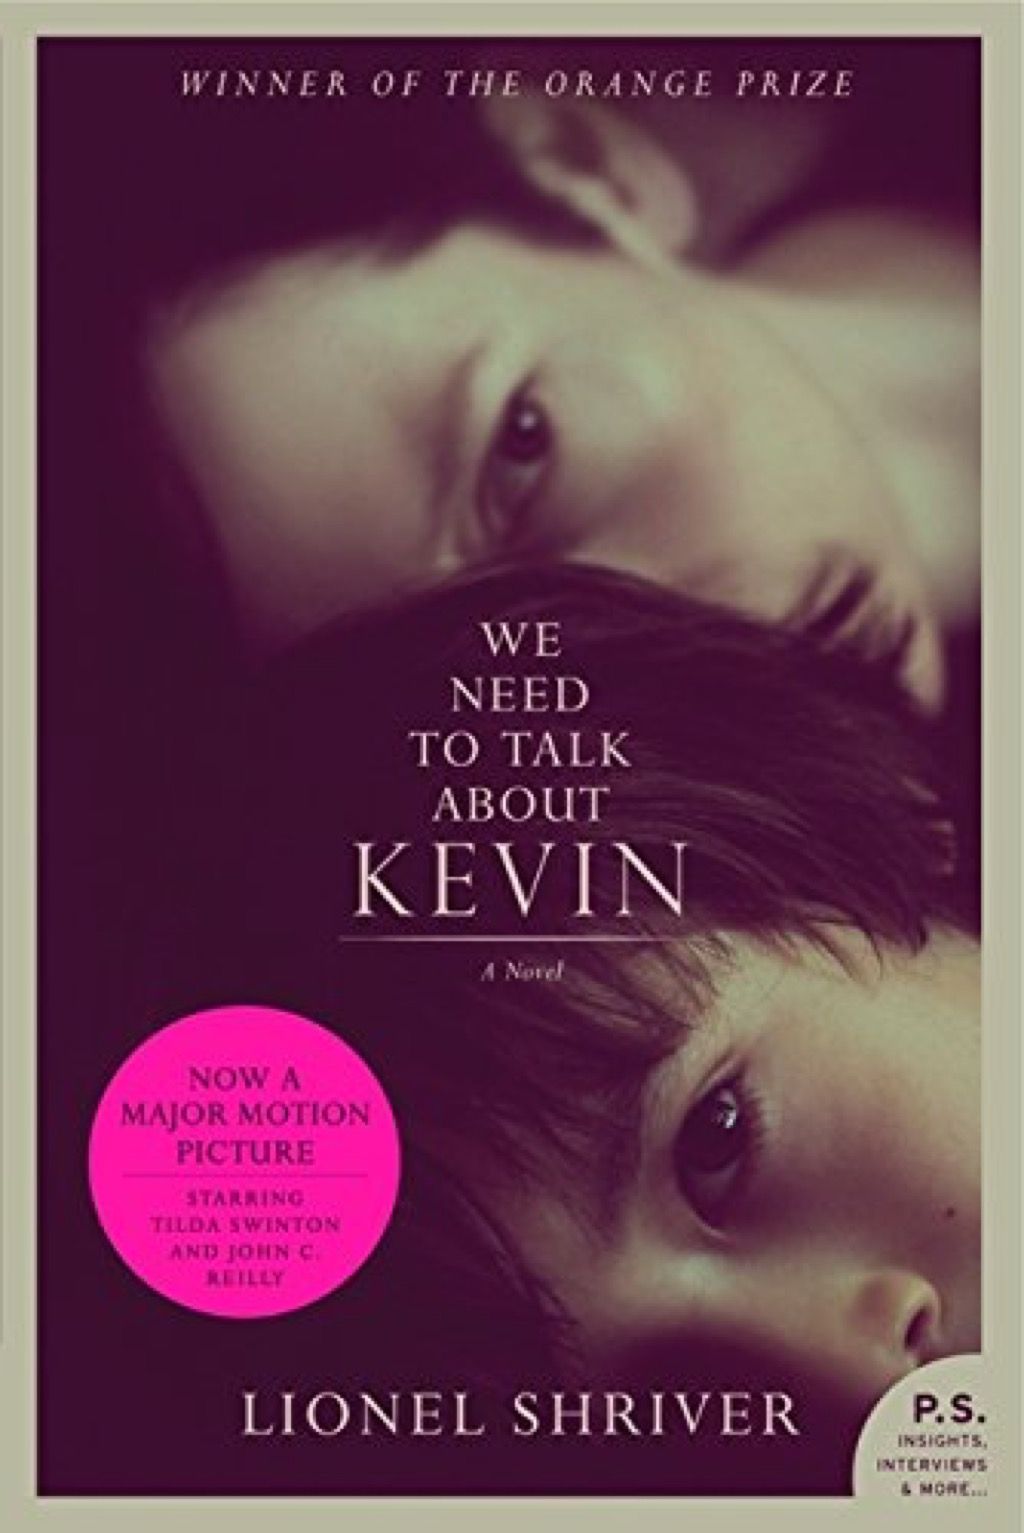 Necesitamos hablar sobre los libros de Kevin que toda mujer debería leer en sus 40